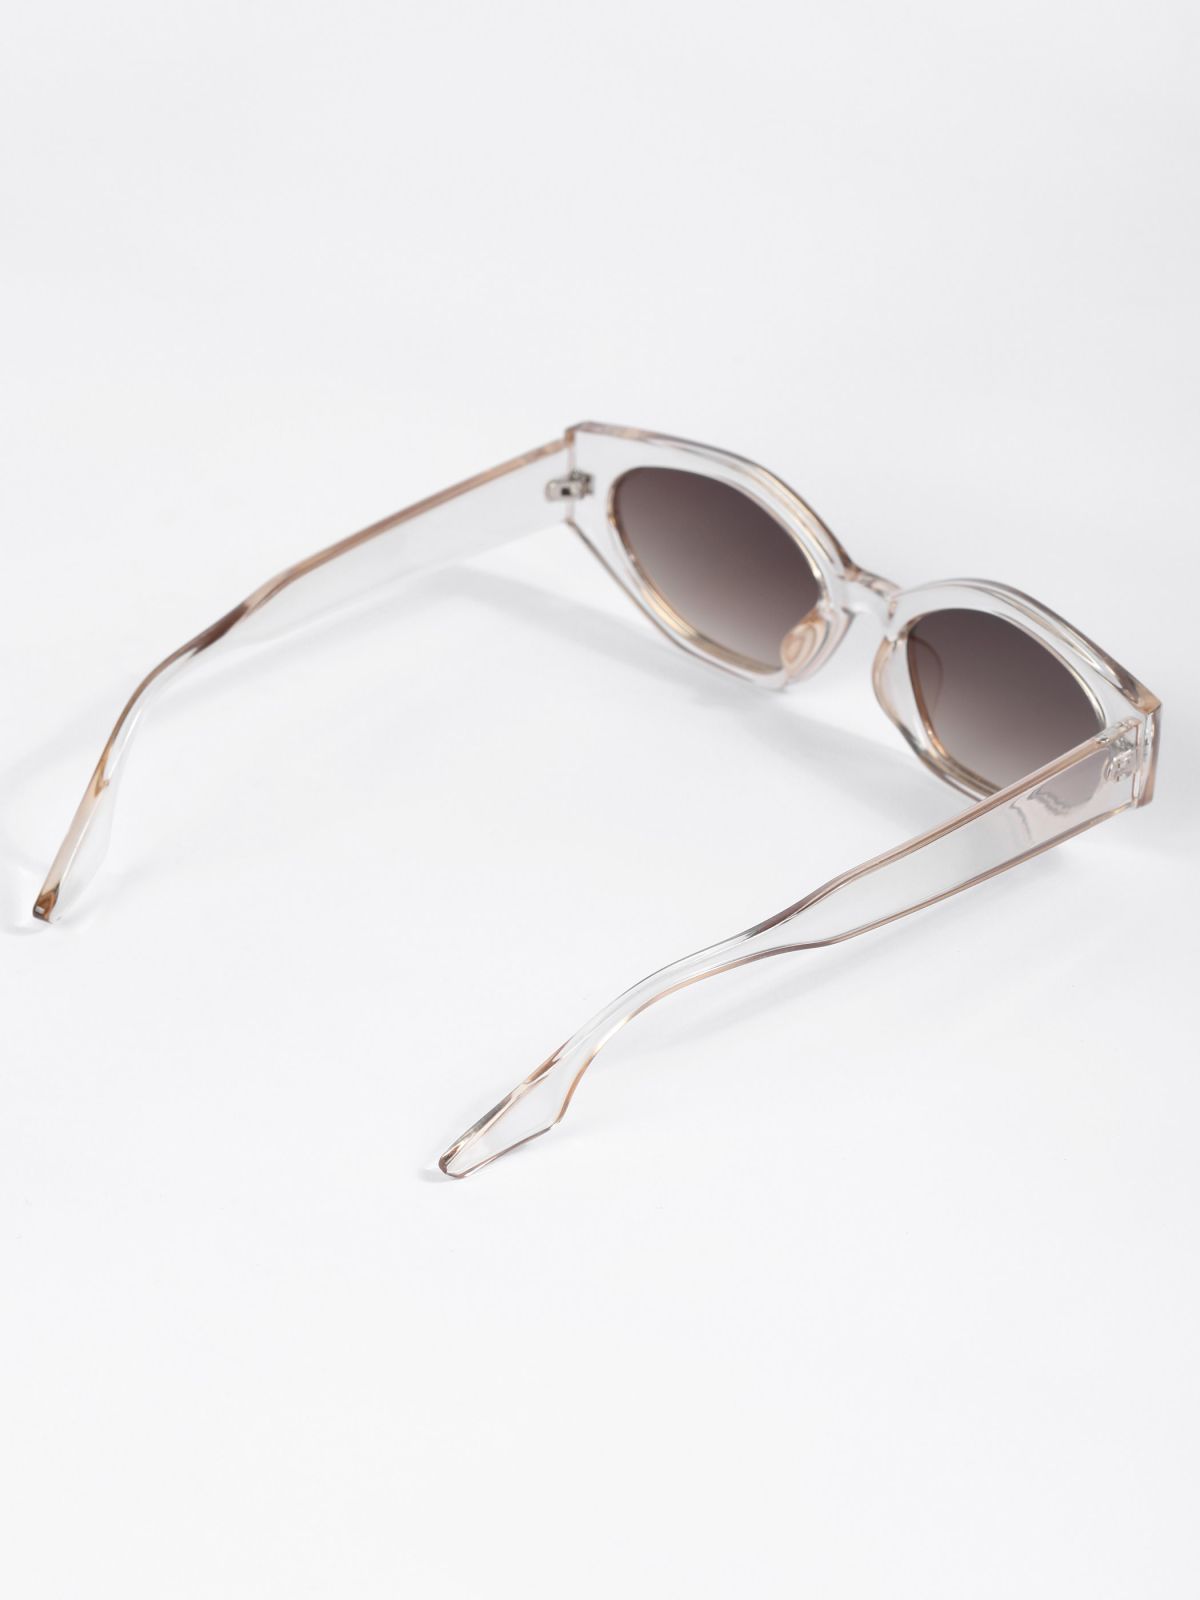  משקפי שמש גאומטרים / TX Eyewear Collection של TERMINAL X